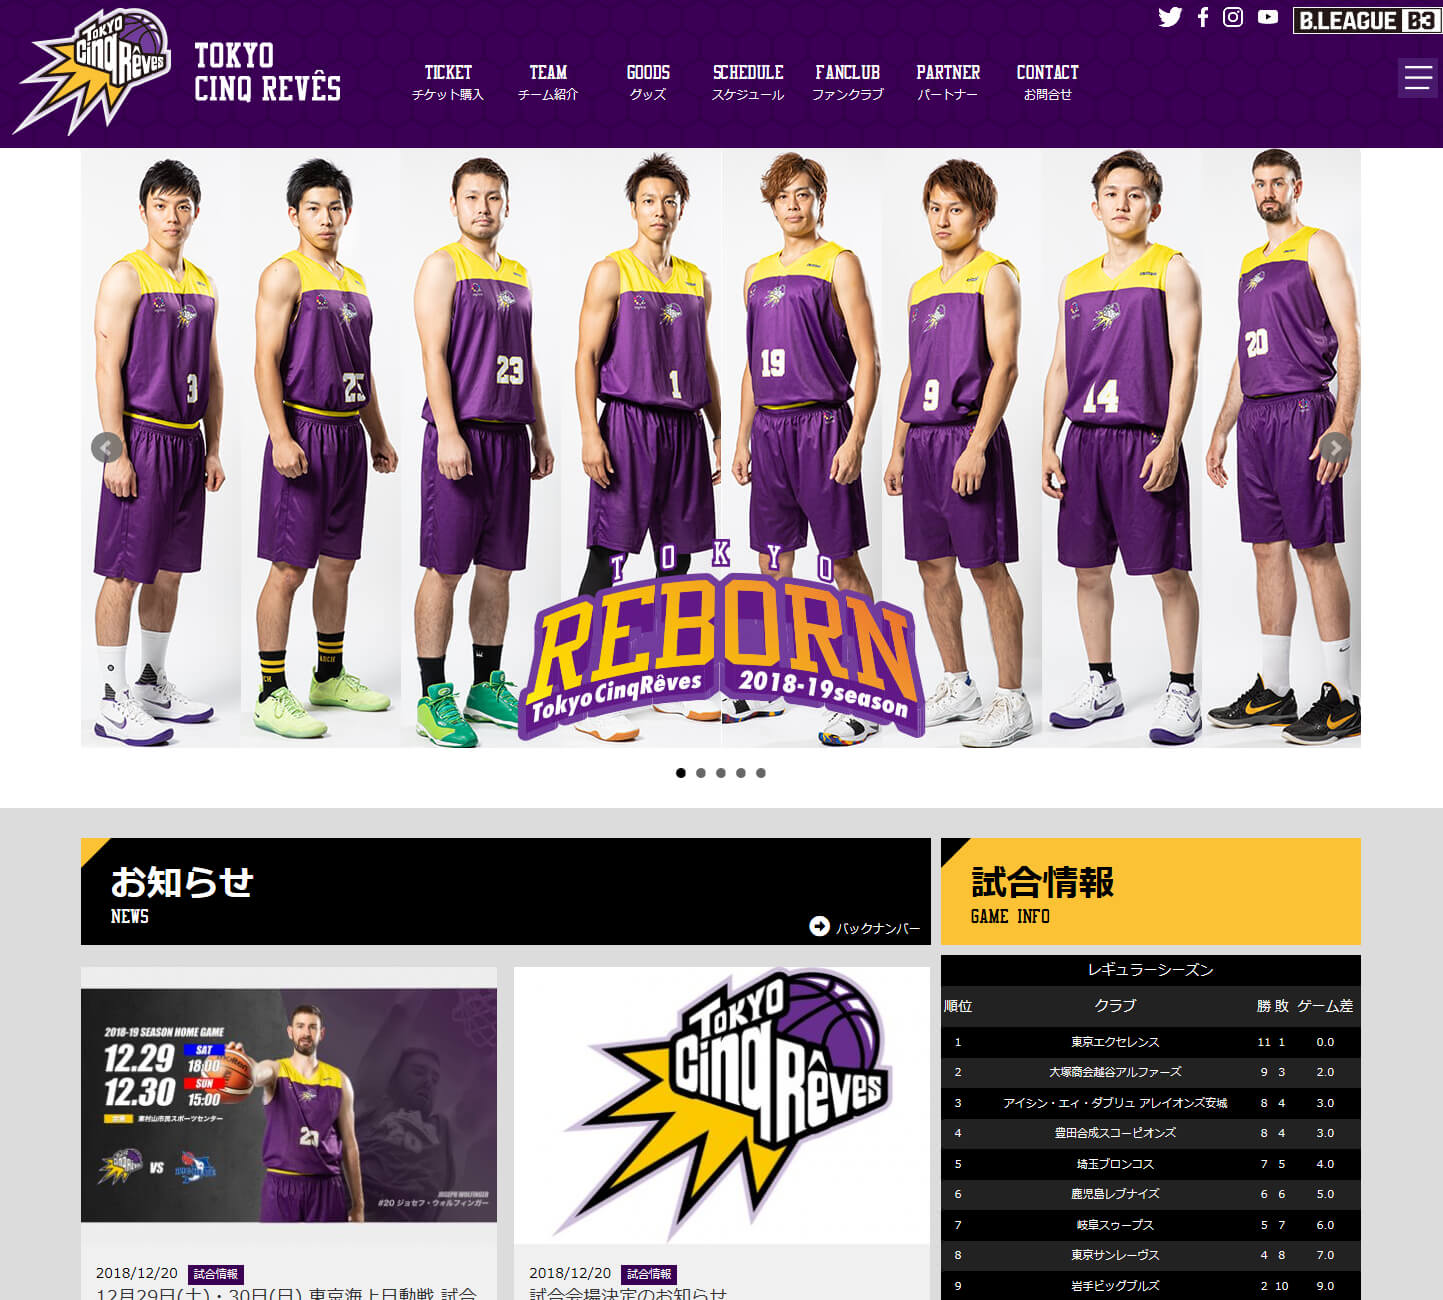 プロバスケットボールクラブ 東京サンレーヴスのホームページを公開